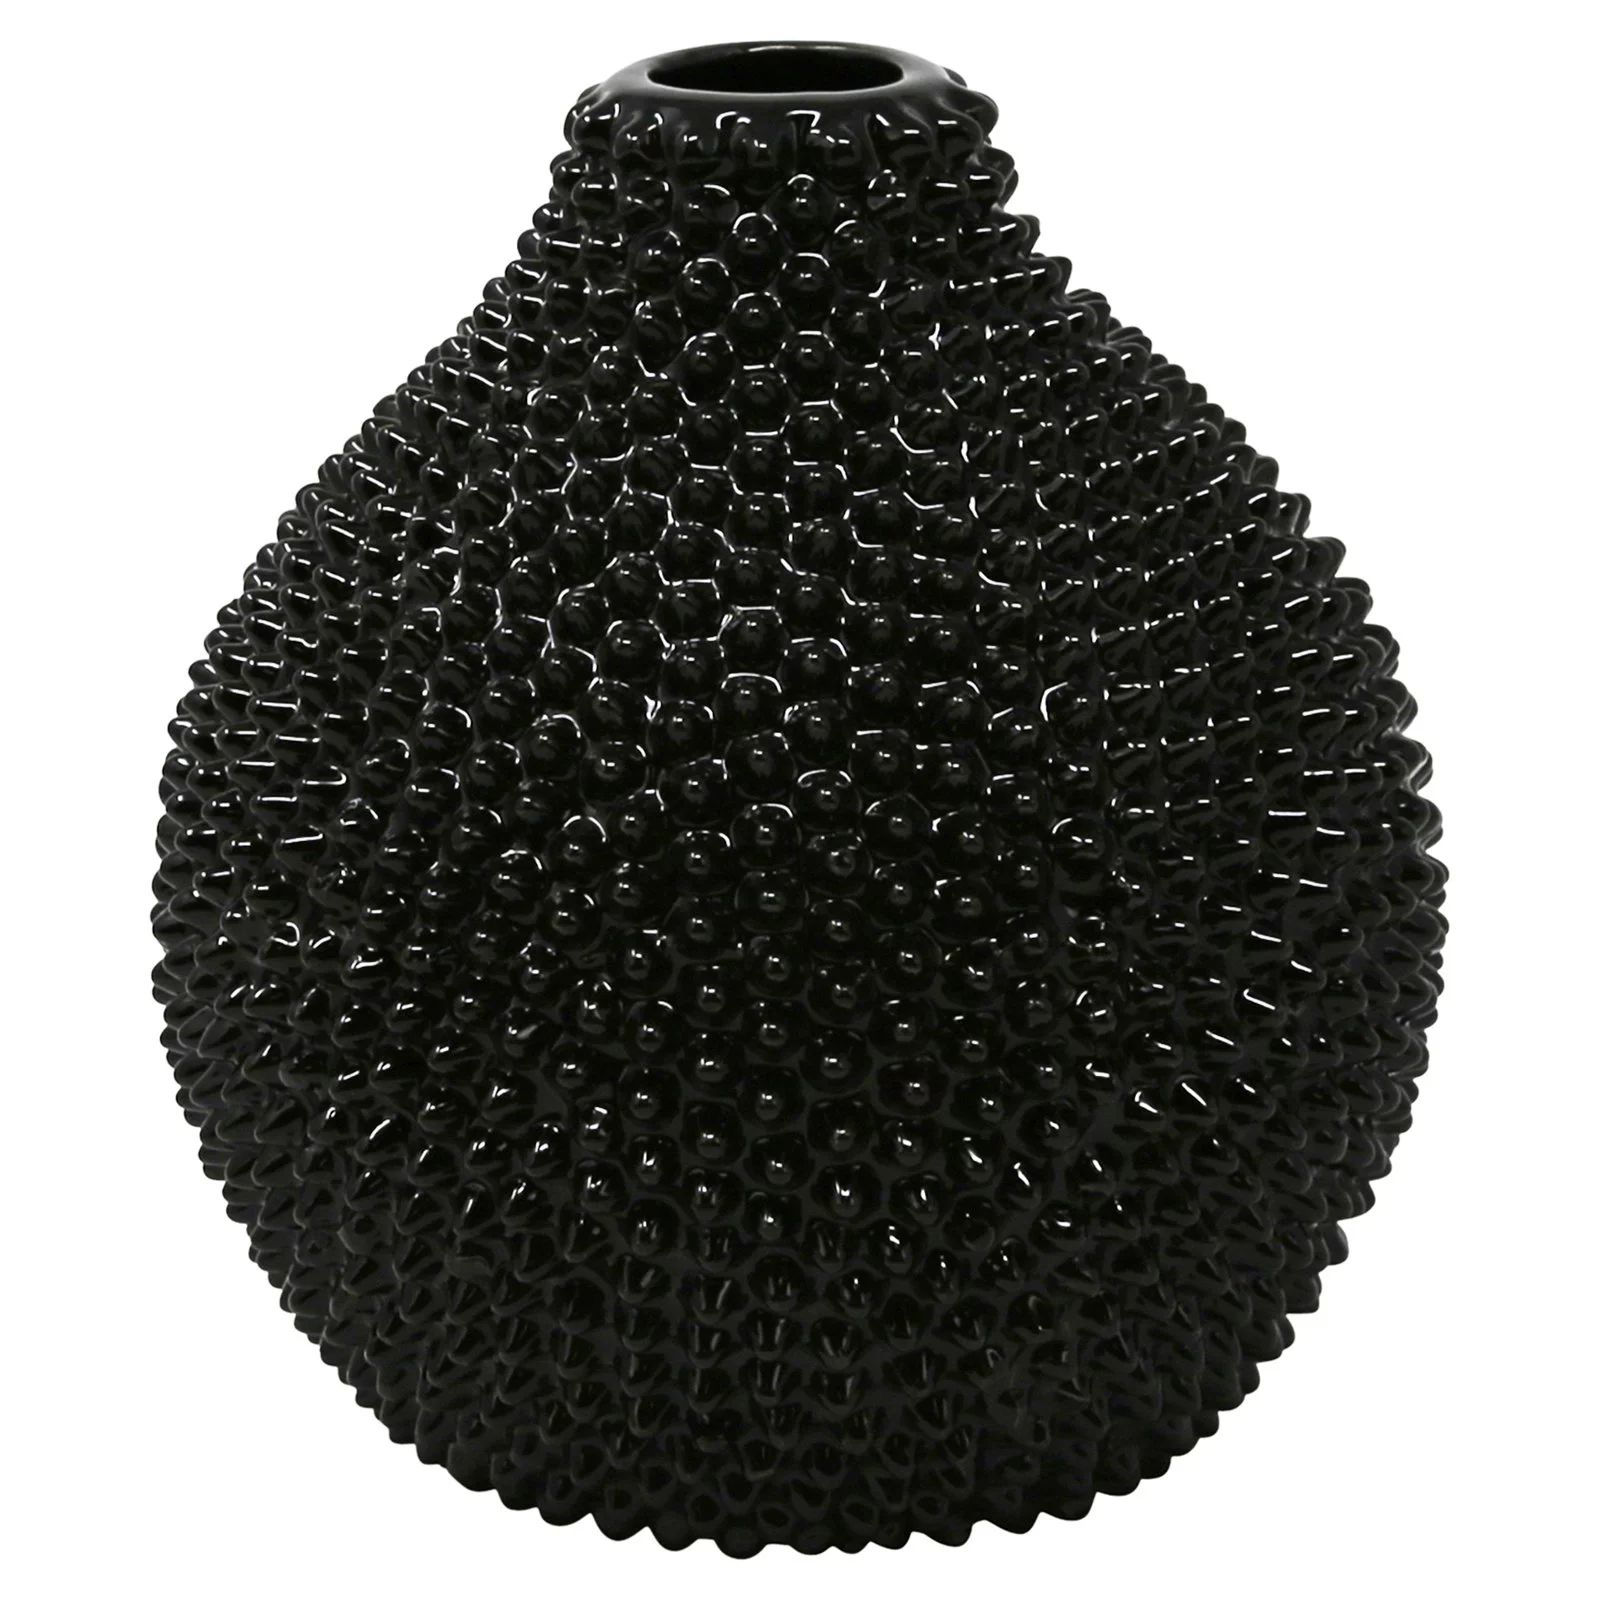 Sagebrook Home Gloss Black Spiked Ceramic Table Vase | Walmart (US)